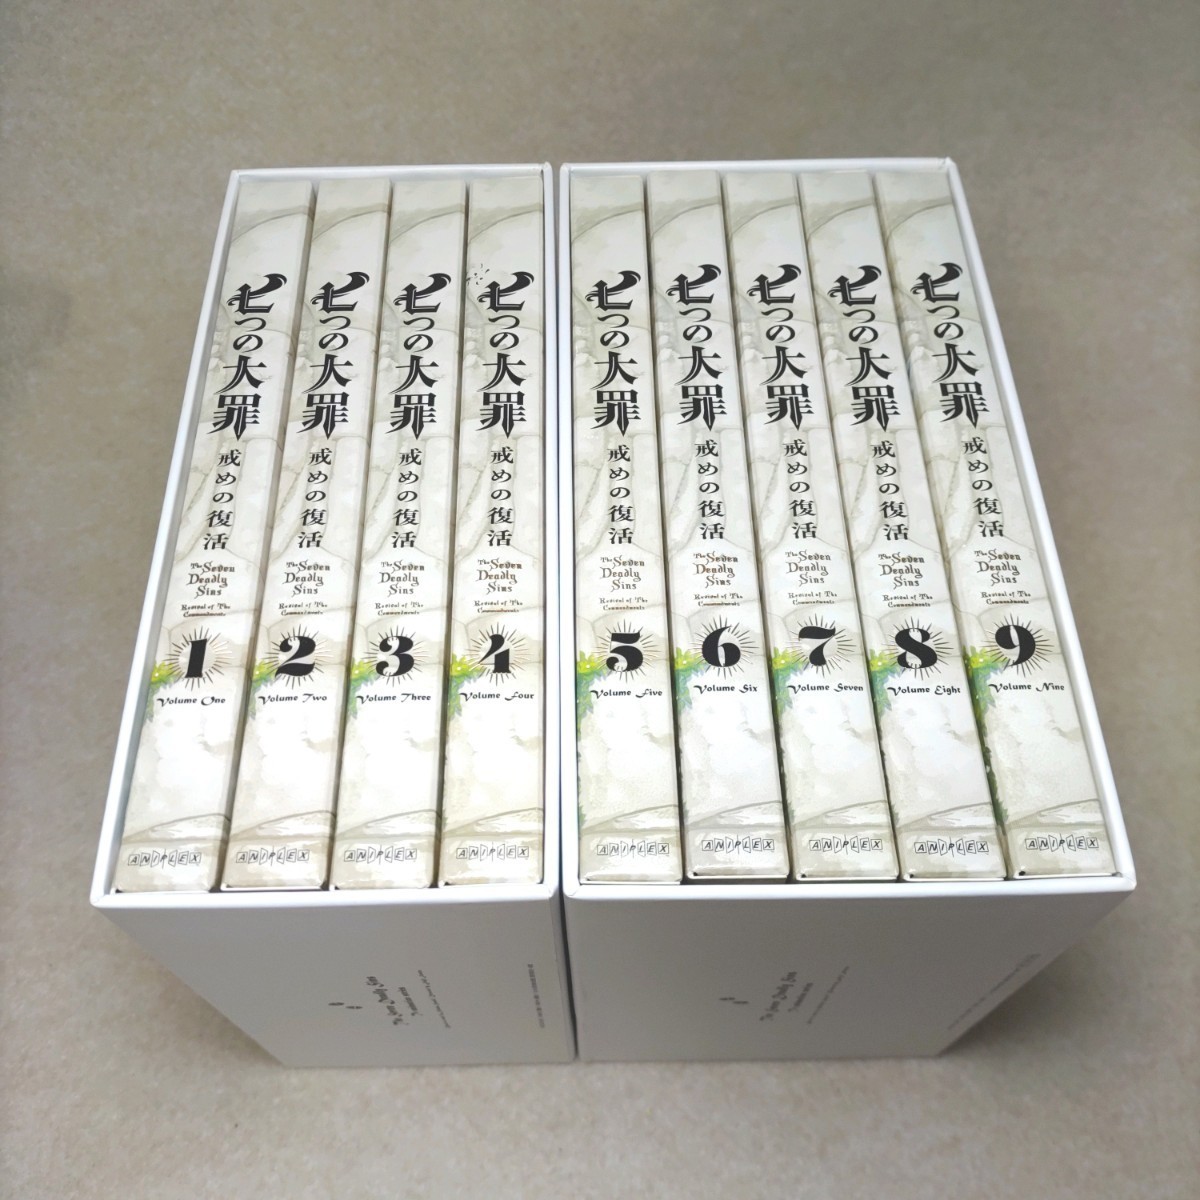 ブルーレイ 9巻セット 七つの大罪 戒めの復活 完全生産限定版 Blu-ray